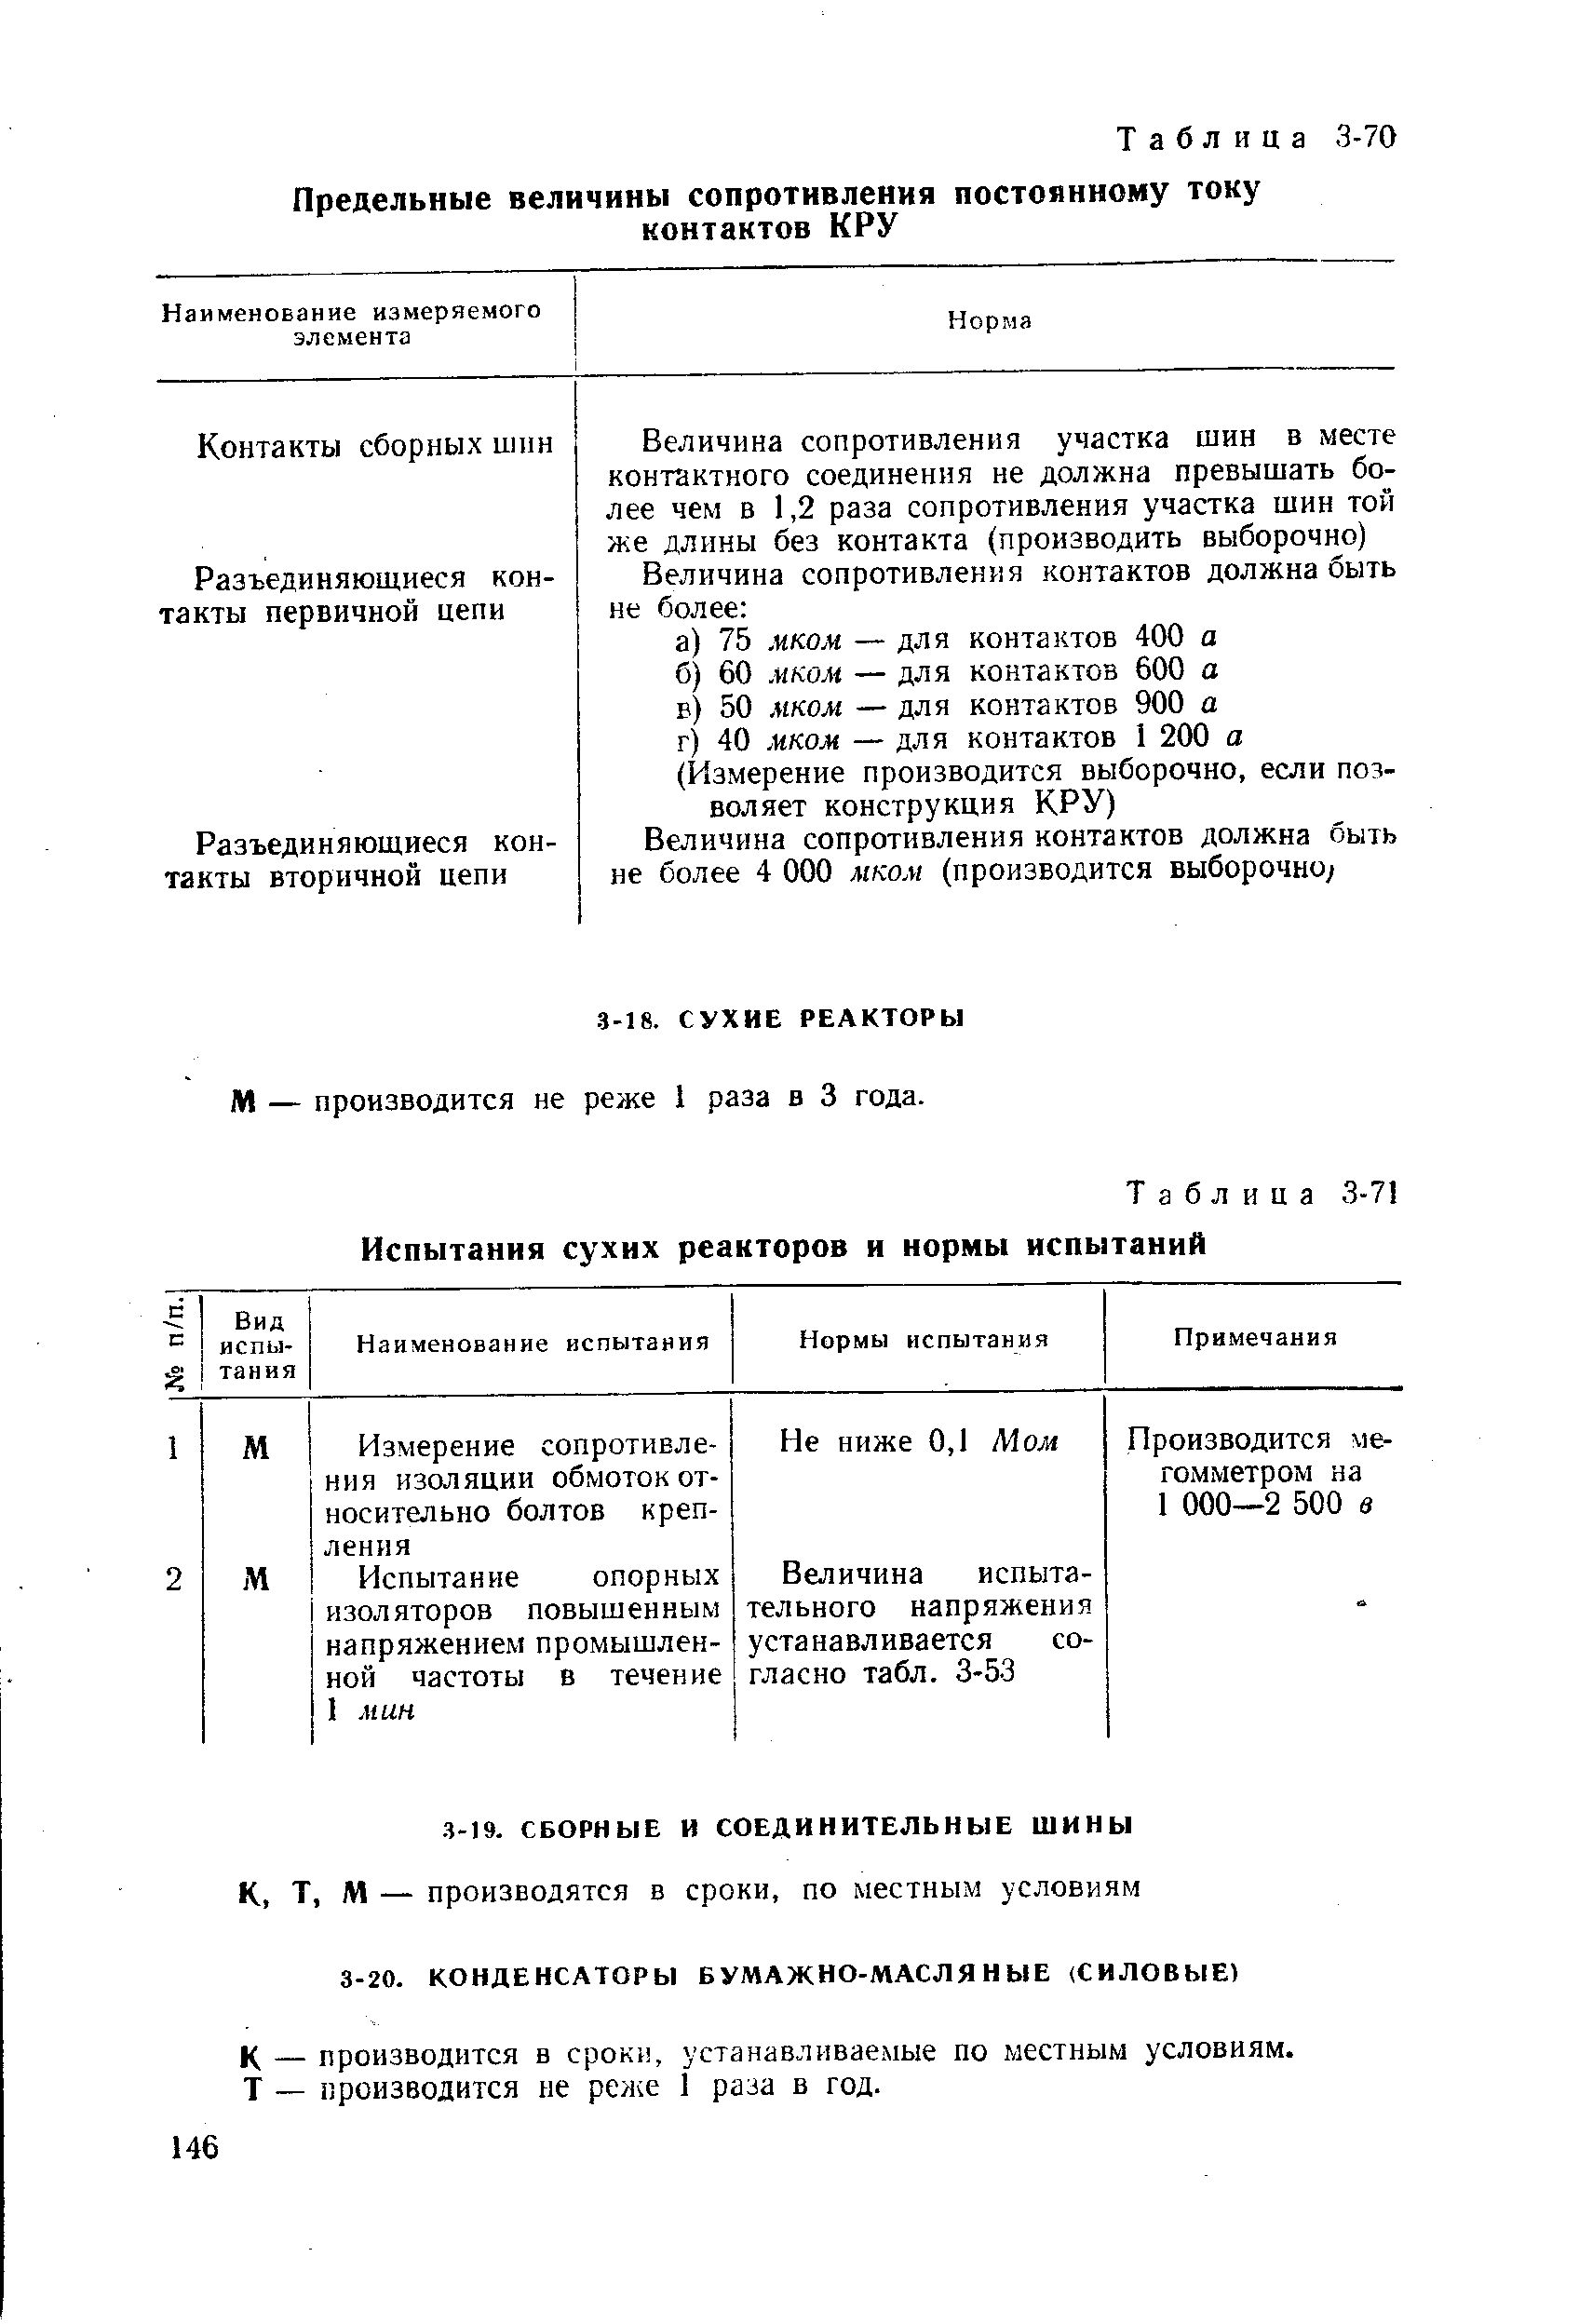 Таблица 3-71 Испытания сухих реакторов и нормы испытаний
